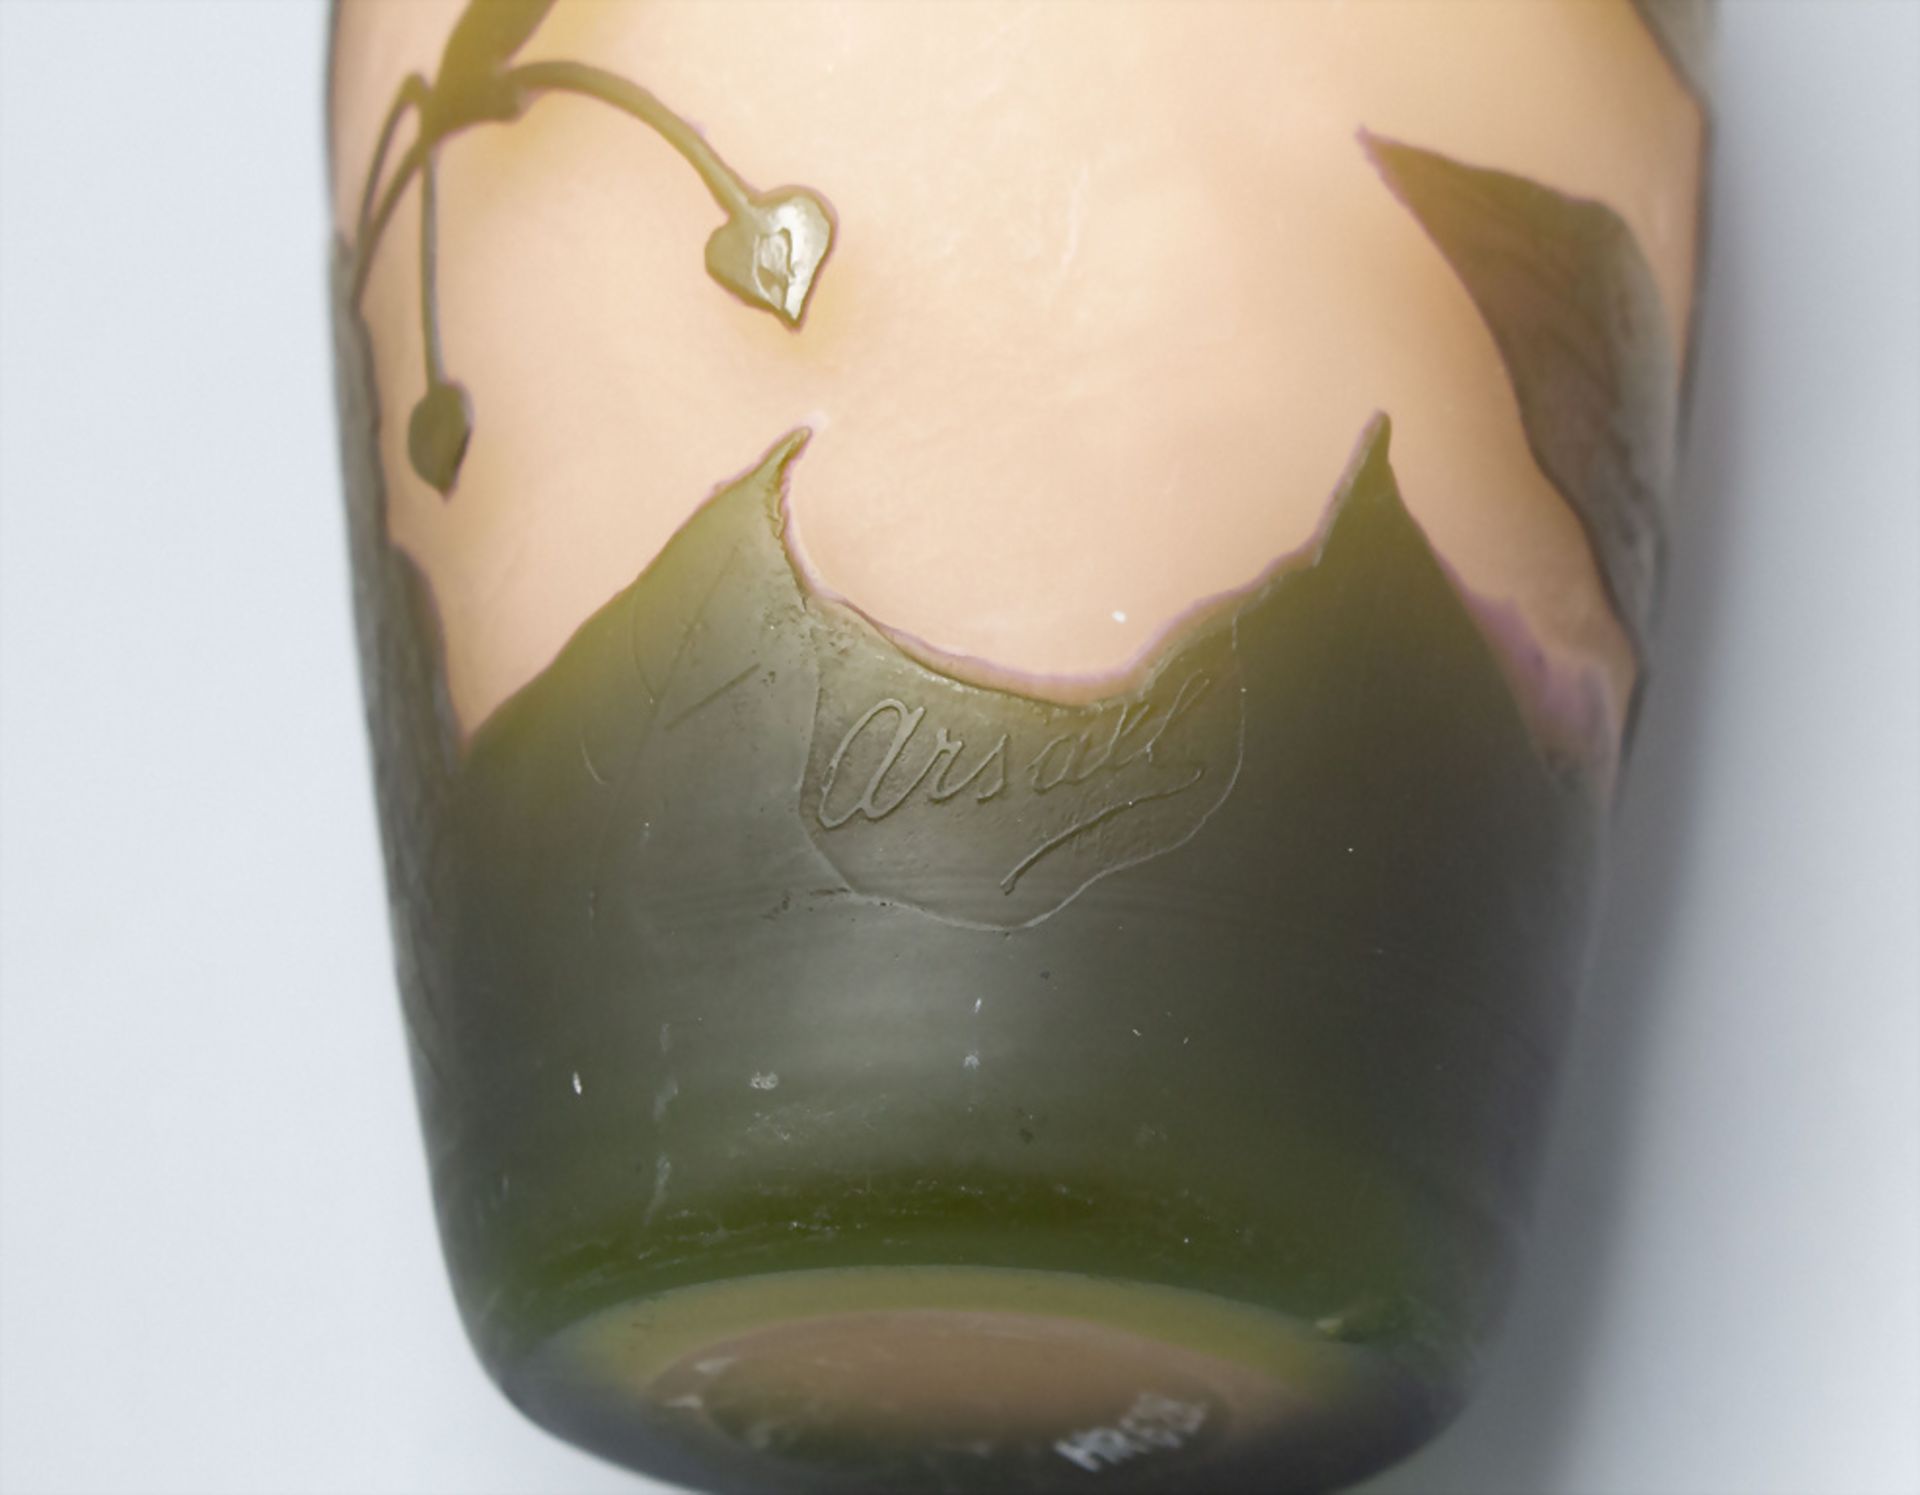 Jugendstil Vase, Arsall, Vereinigte Lausitzer Glaswerke AG, Weisswasser, 1921 - Image 4 of 6